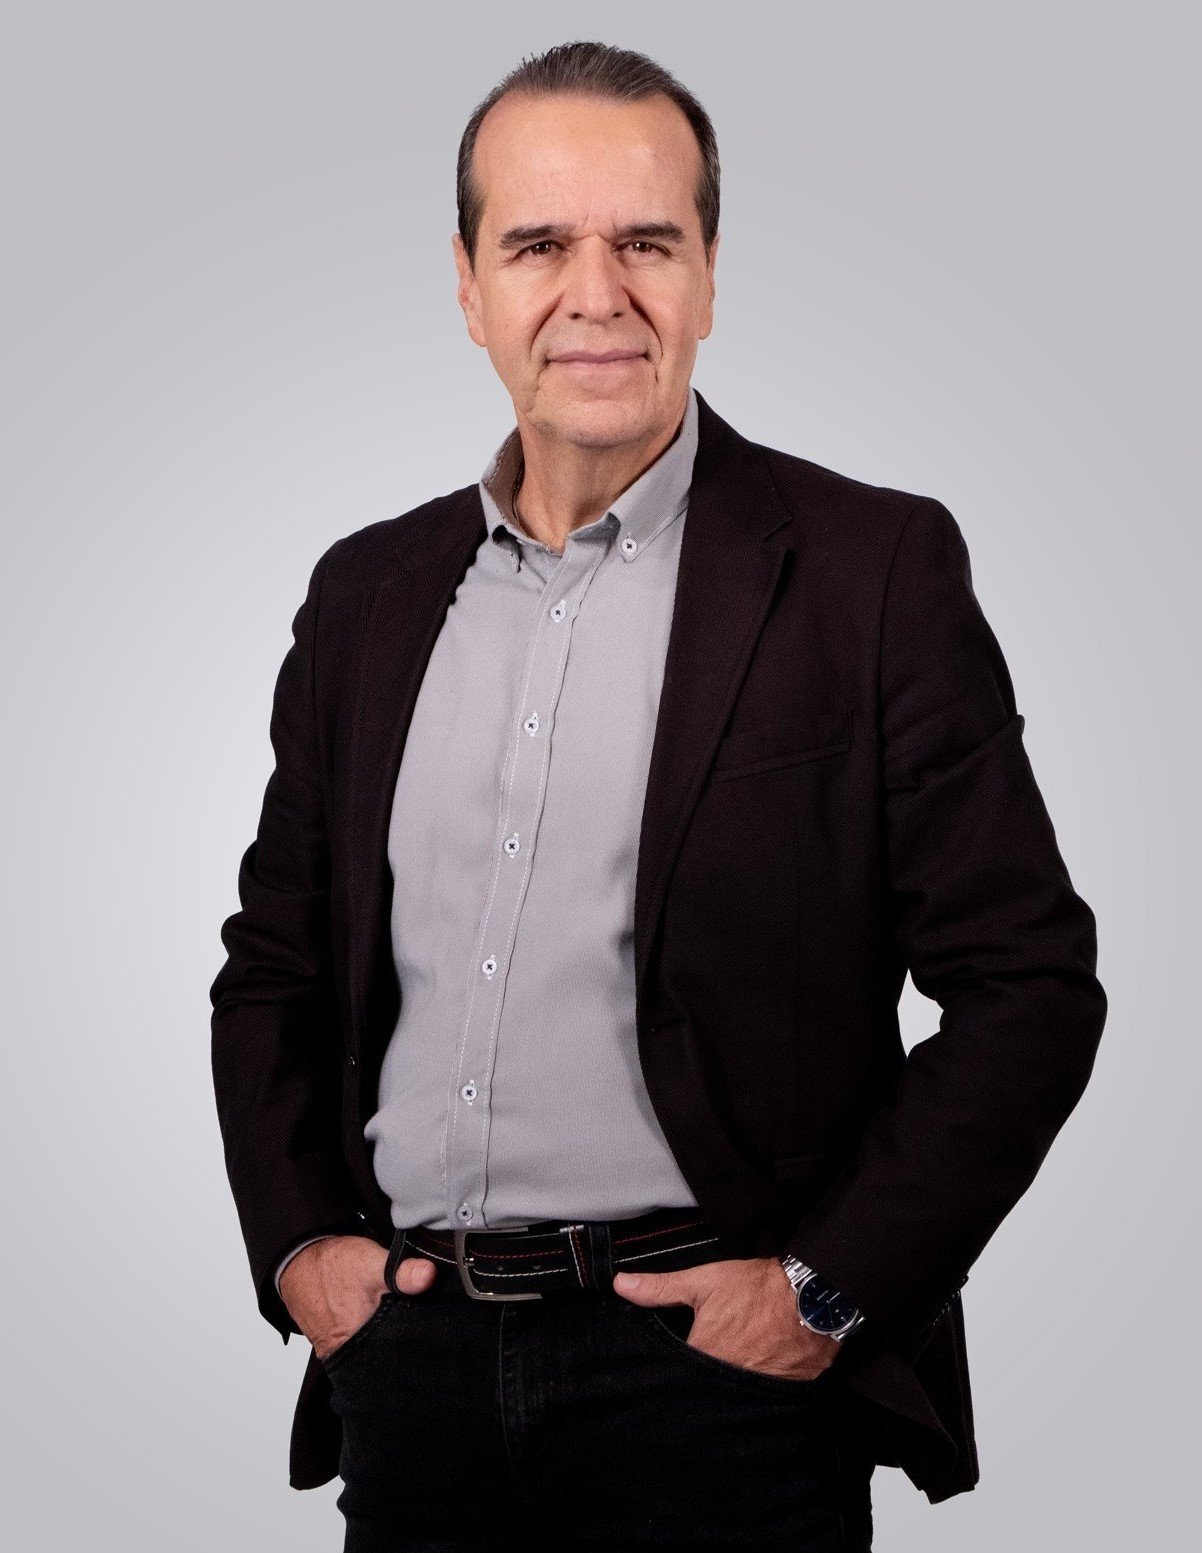 Juan carlos greiffenstein